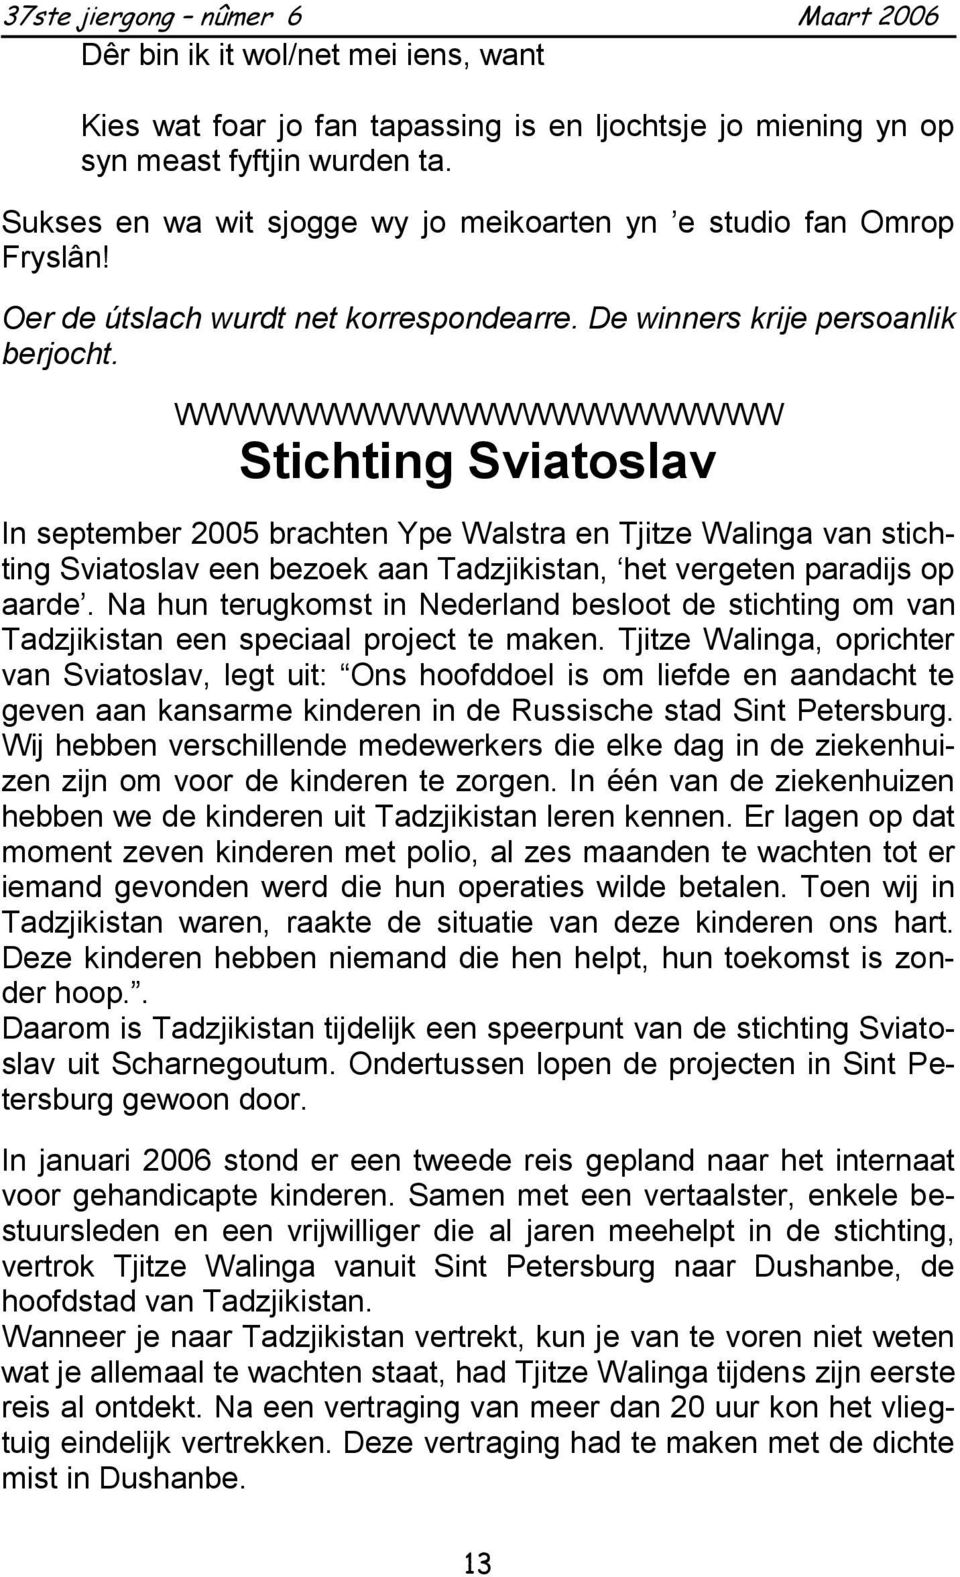 WWWWWWWWWWWWWWWWWWWWW Stichting Sviatoslav In september 2005 brachten Ype Walstra en Tjitze Walinga van stichting Sviatoslav een bezoek aan Tadzjikistan, het vergeten paradijs op aarde.